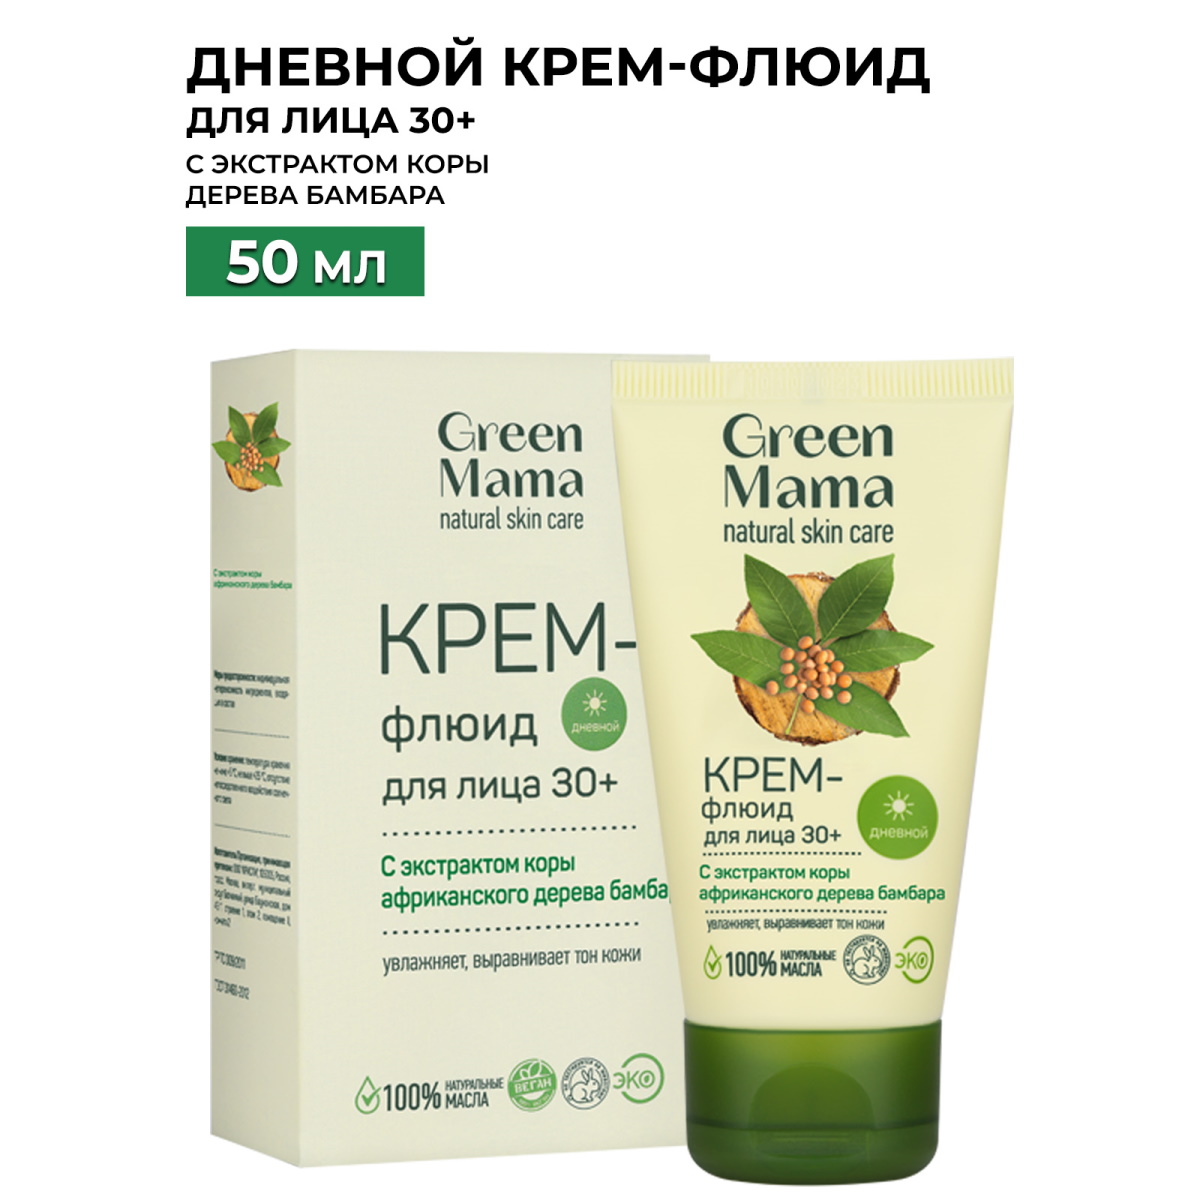 Green Mama, Дневной крем-флюид для лица 30+, 50 мл скраб сода белита baking soda для глубокого очищения лица туба 100 мл